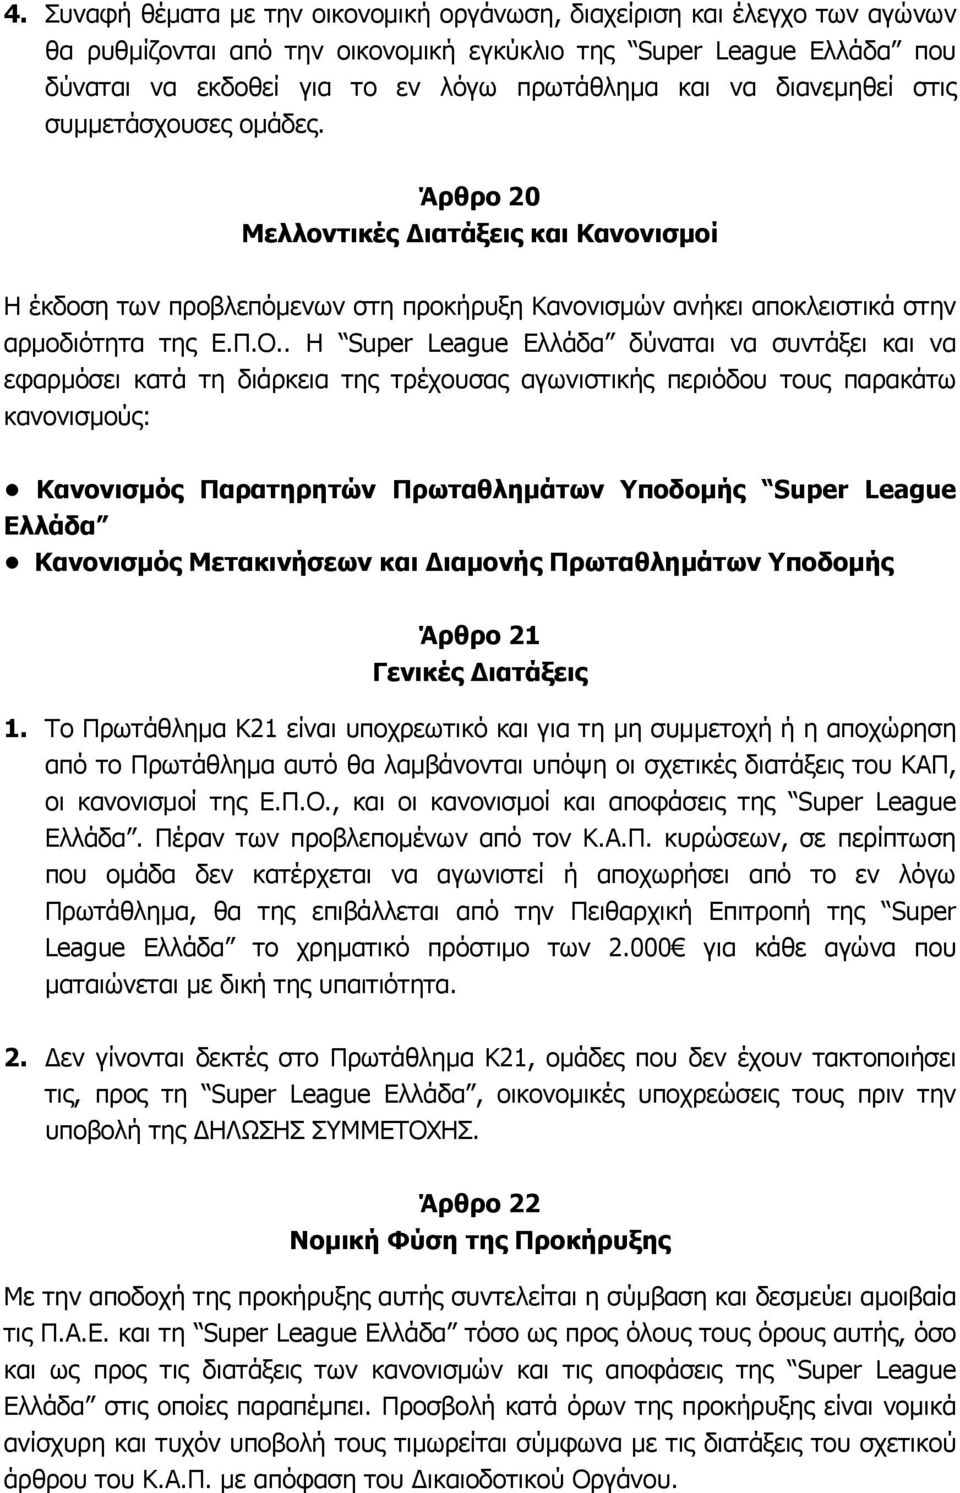 . Η Super League Ελλάδα δύναται να συντάξει και να εφαρμόσει κατά τη διάρκεια της τρέχουσας αγωνιστικής περιόδου τους παρακάτω κανονισμούς: Κανονισμός Παρατηρητών Πρωταθλημάτων Υποδομής Super League